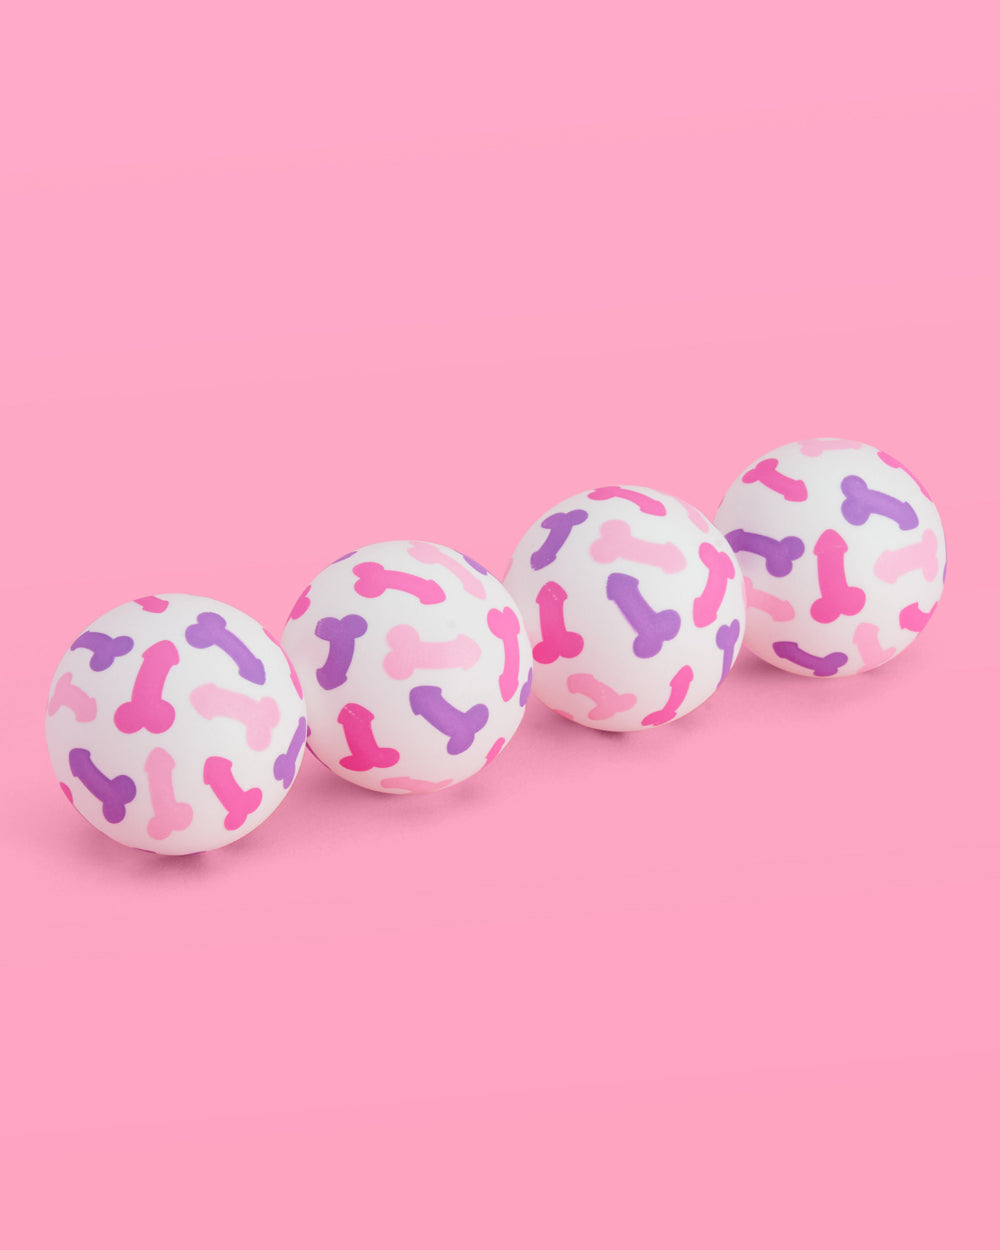 P3N!5 Pong Balls - really cute pong balls